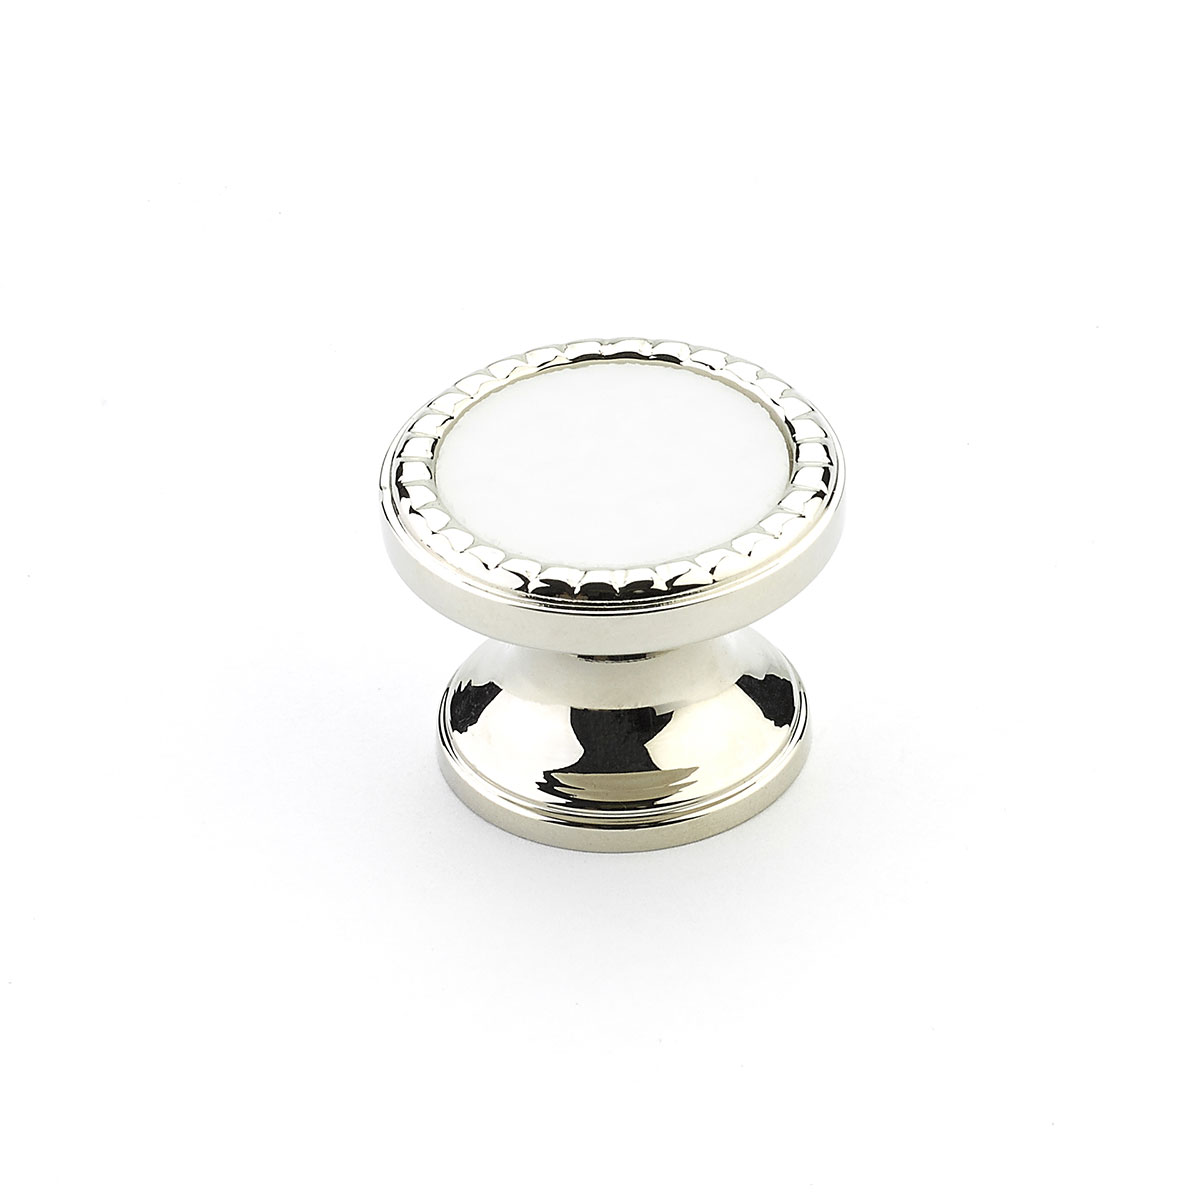 Schaub 20-PN-CW Round Knob, Polished Nickel, Classic White Glass Inlay, 1-1/4" Dia - Polished Nickel